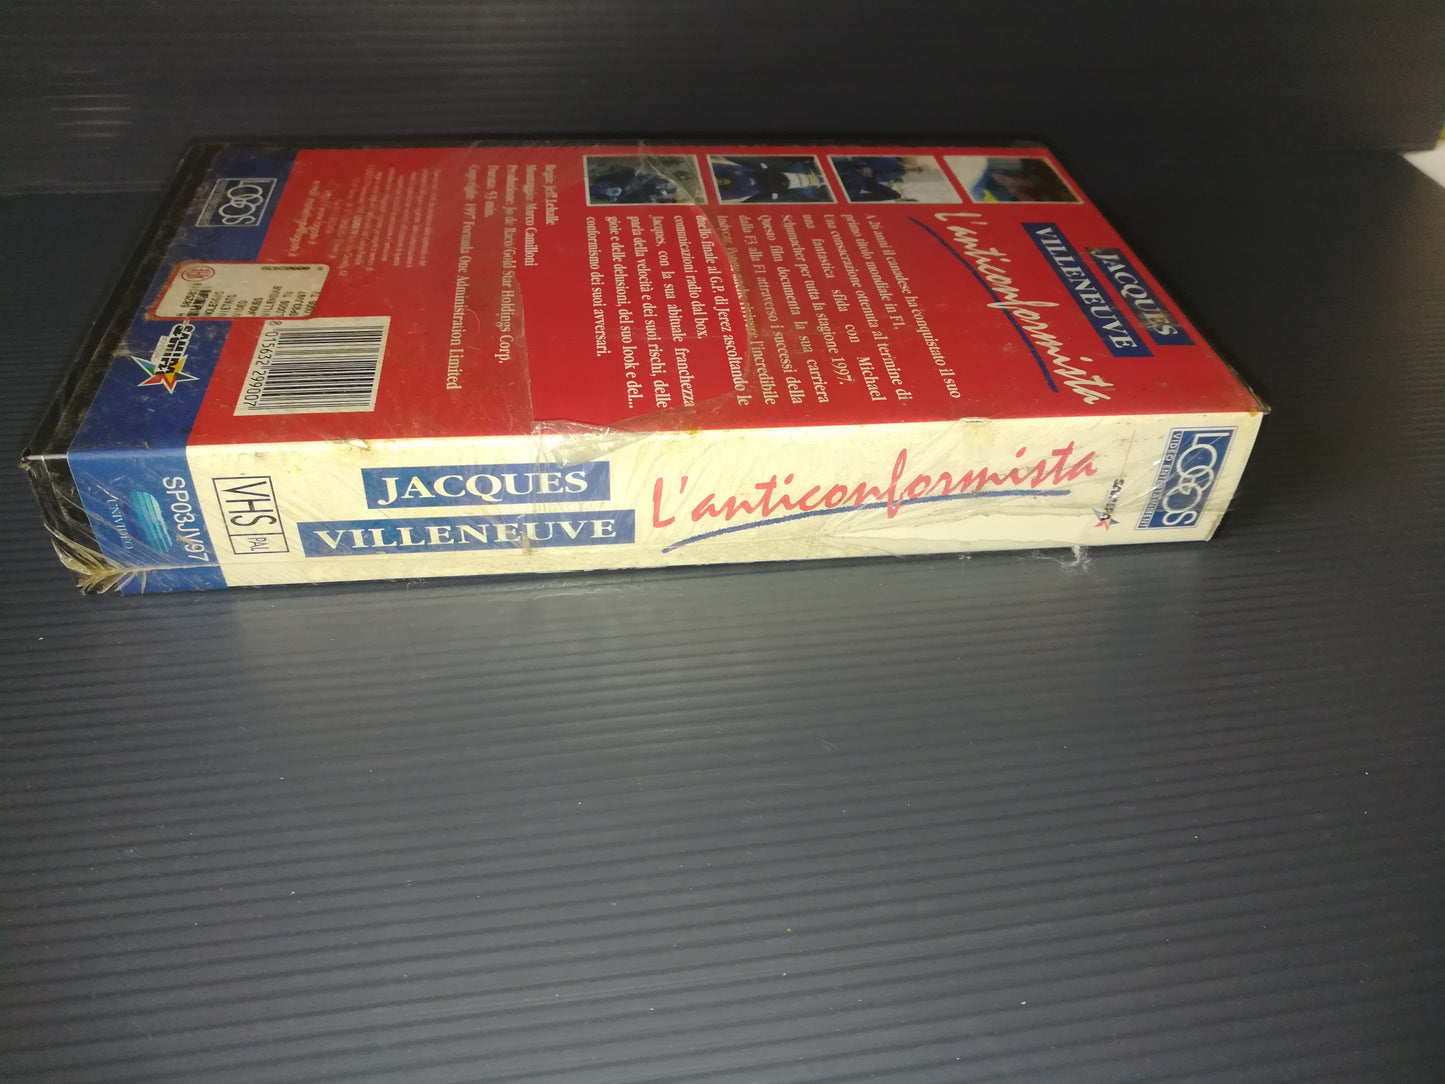 "The Nonconformist Jacques Villeneuve" VHS Logos